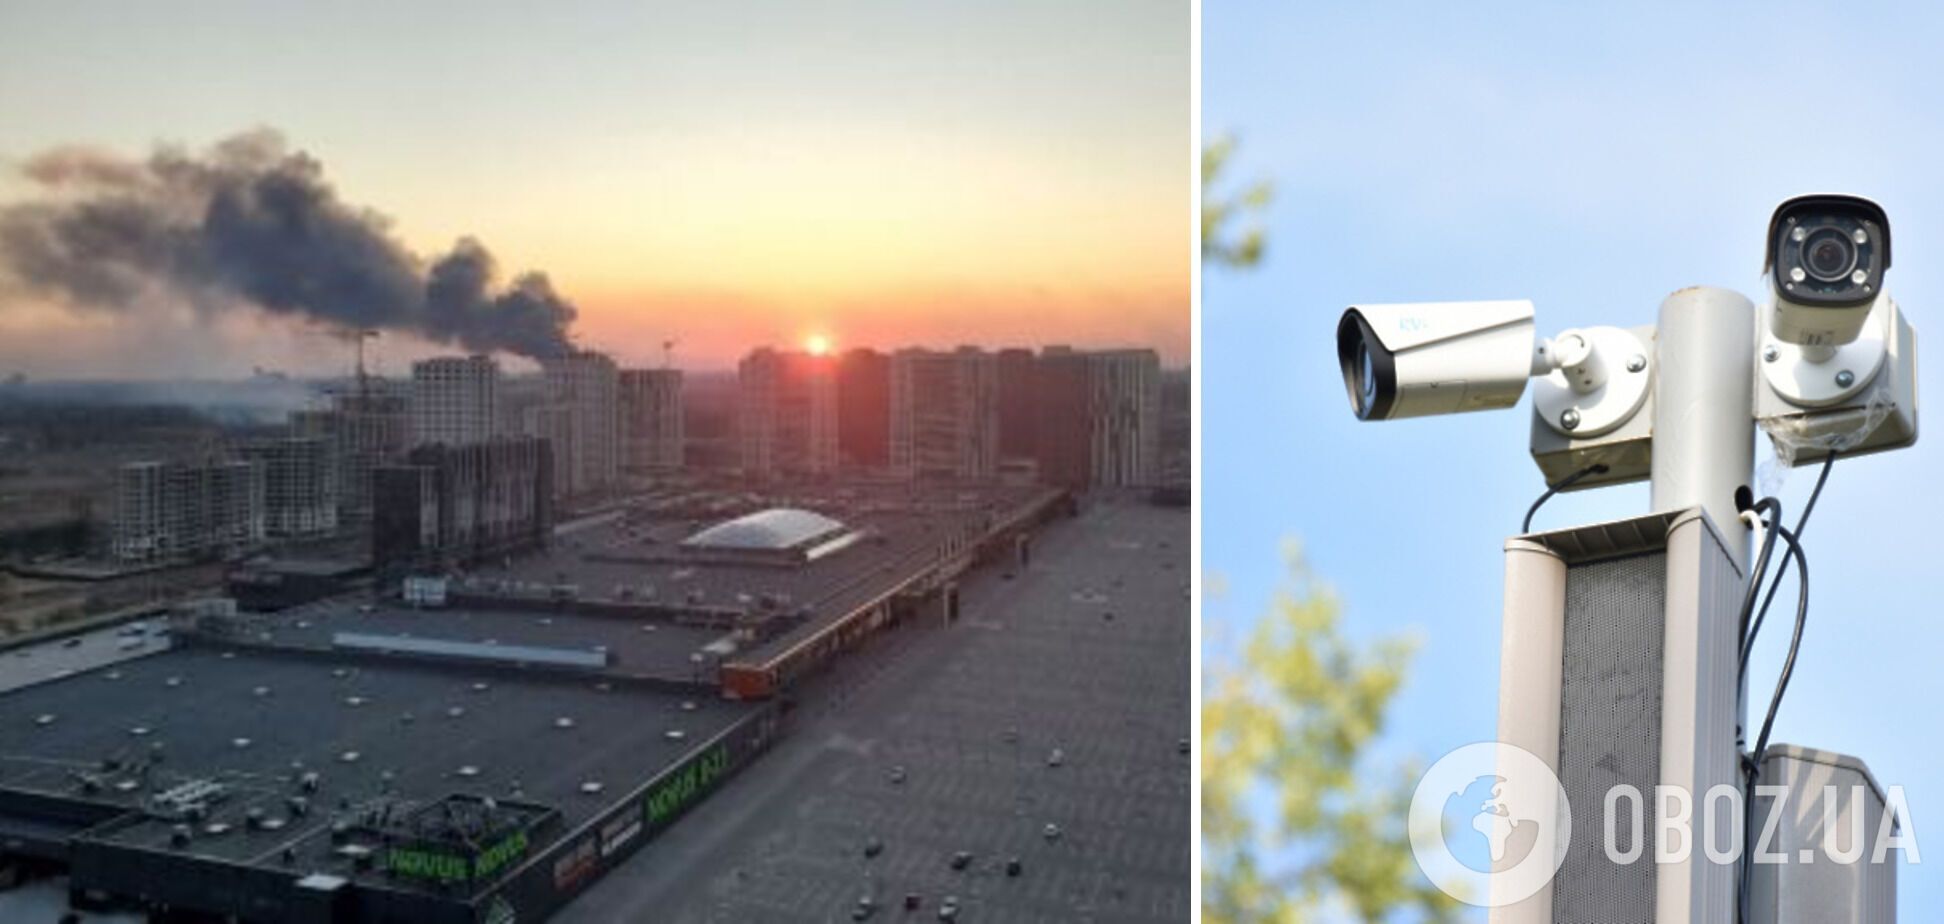 Во время атаки на Киев в РФ следили за работой ПВО по камерам видеонаблюдения: в Воздушных силах отреагировали